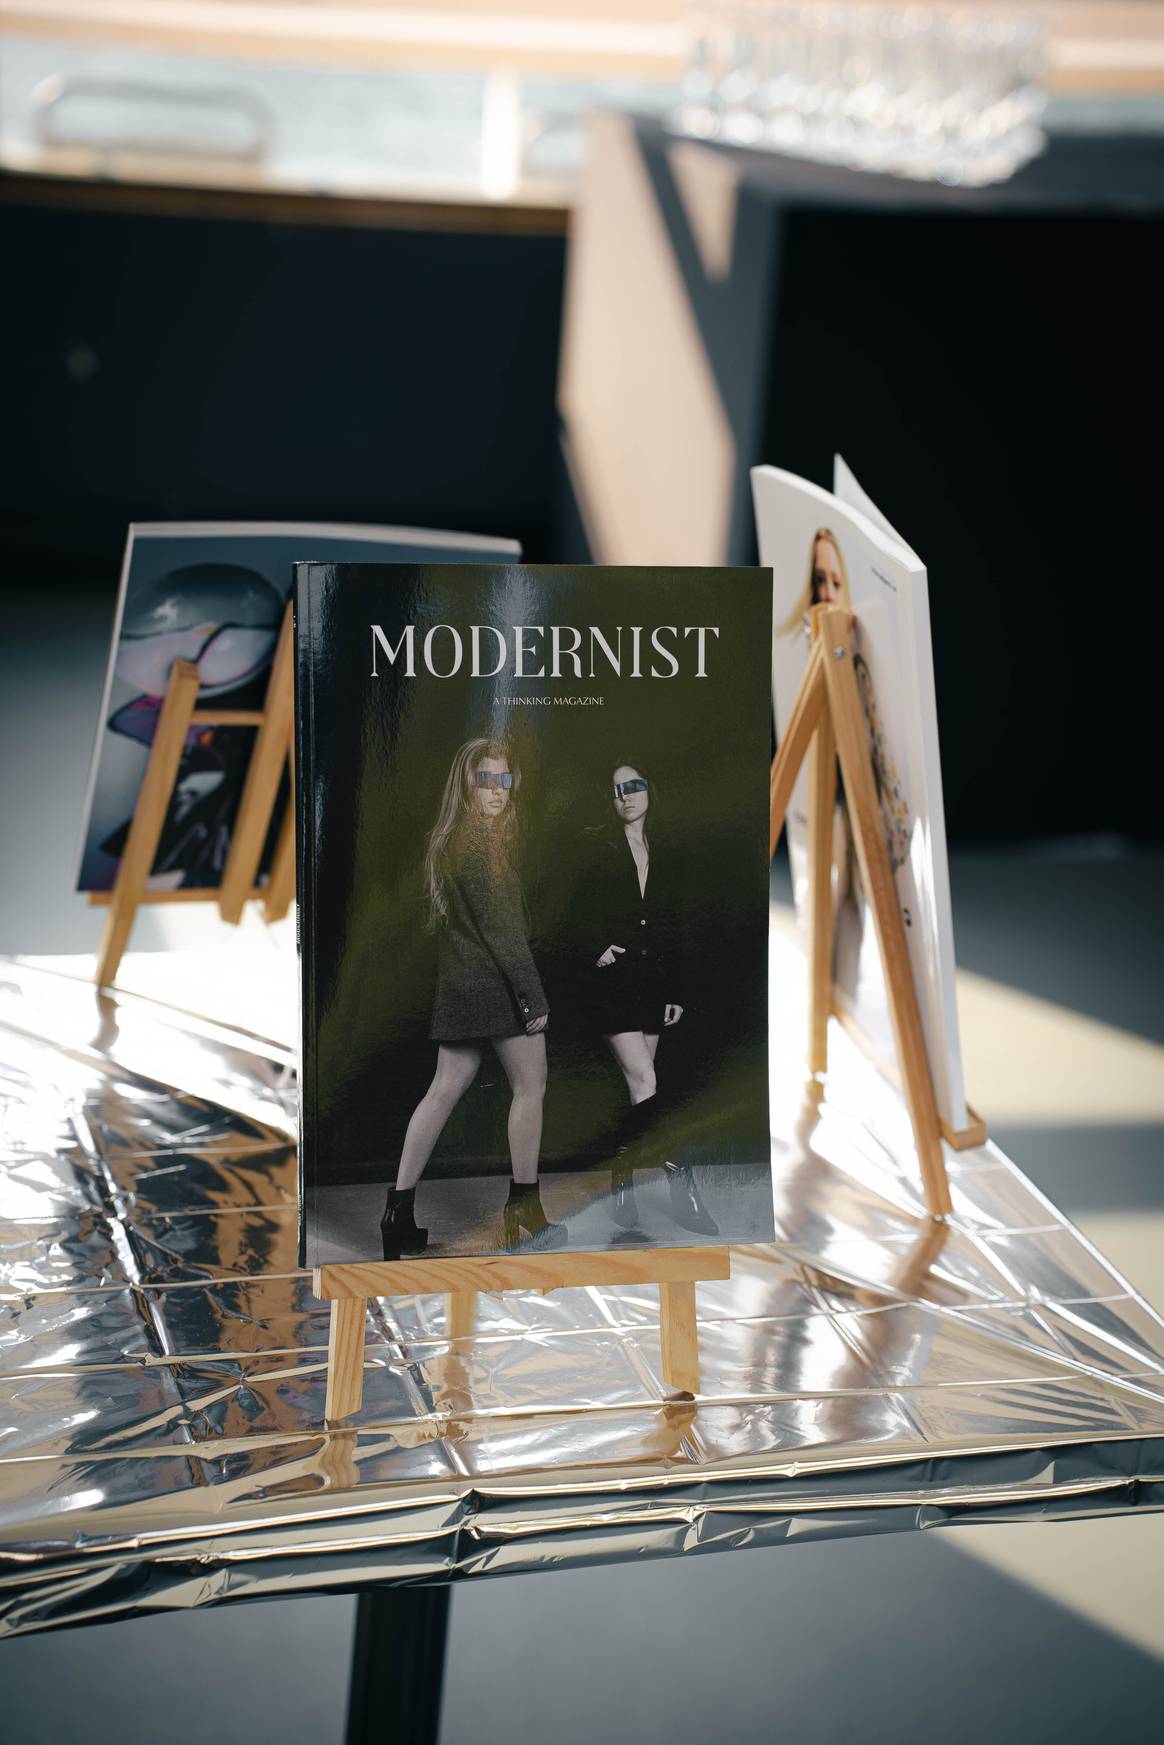 Image: "Modernist"